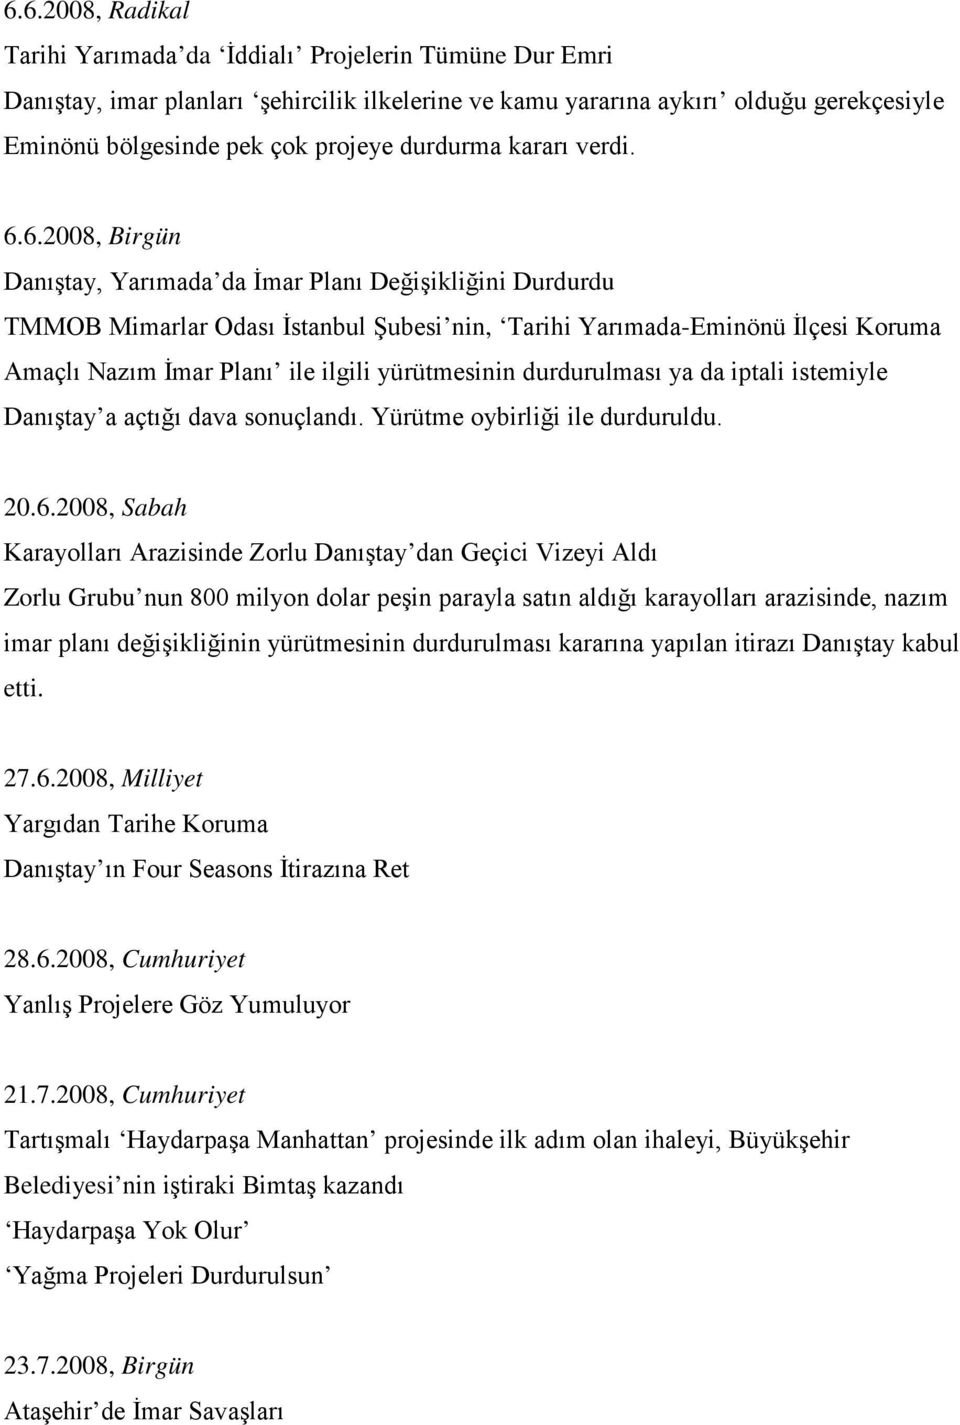 6.2008, Birgün Danıştay, Yarımada da İmar Planı Değişikliğini Durdurdu TMMOB Mimarlar Odası İstanbul Şubesi nin, Tarihi Yarımada-Eminönü İlçesi Koruma Amaçlı Nazım İmar Planı ile ilgili yürütmesinin